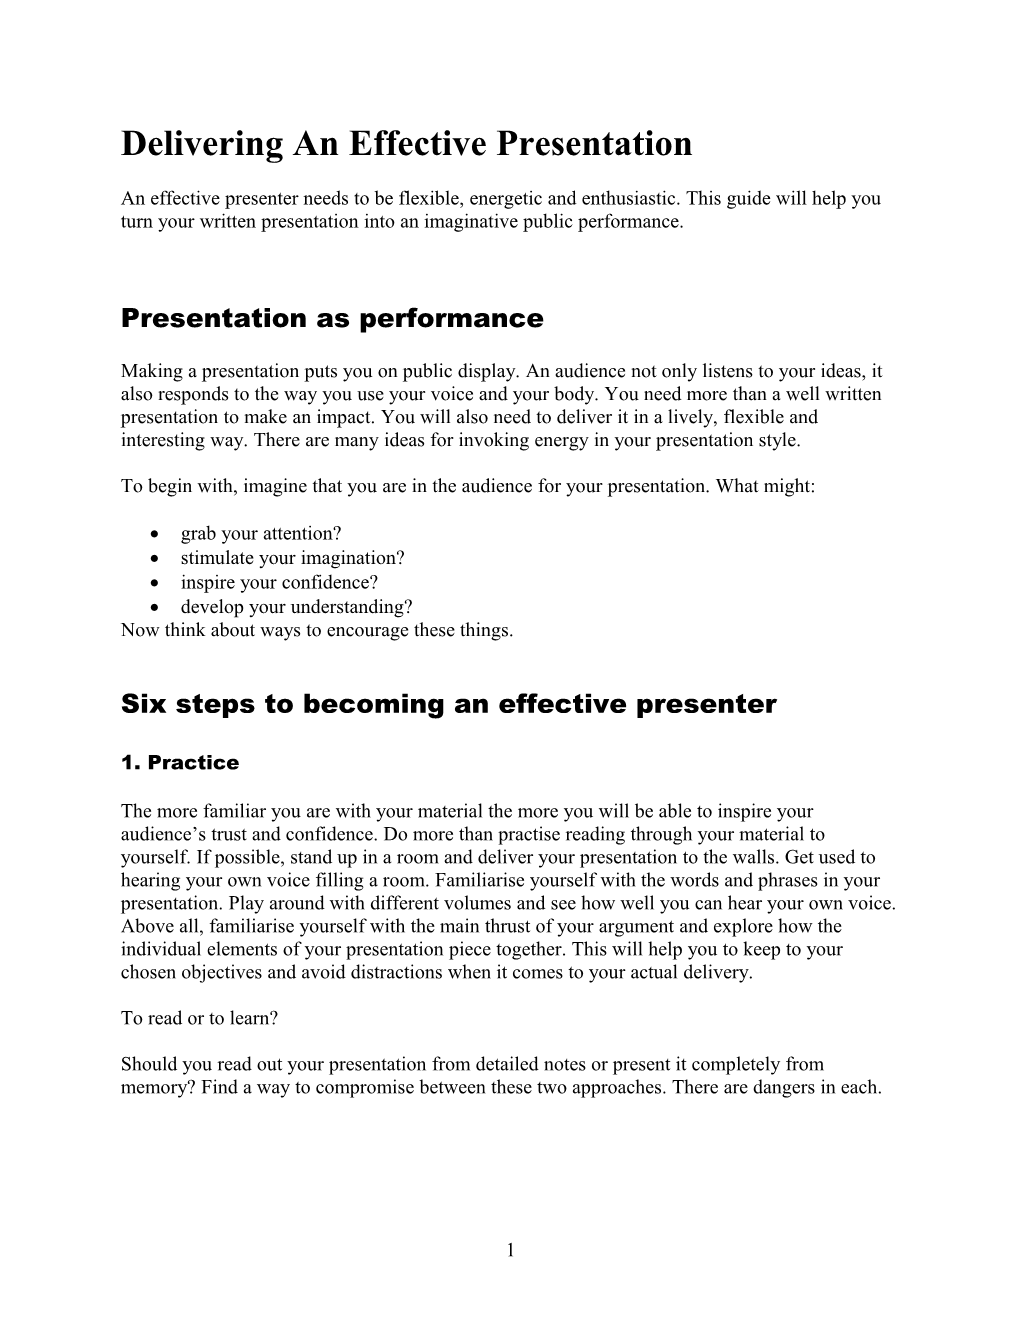 Delivering an Effective Presentation